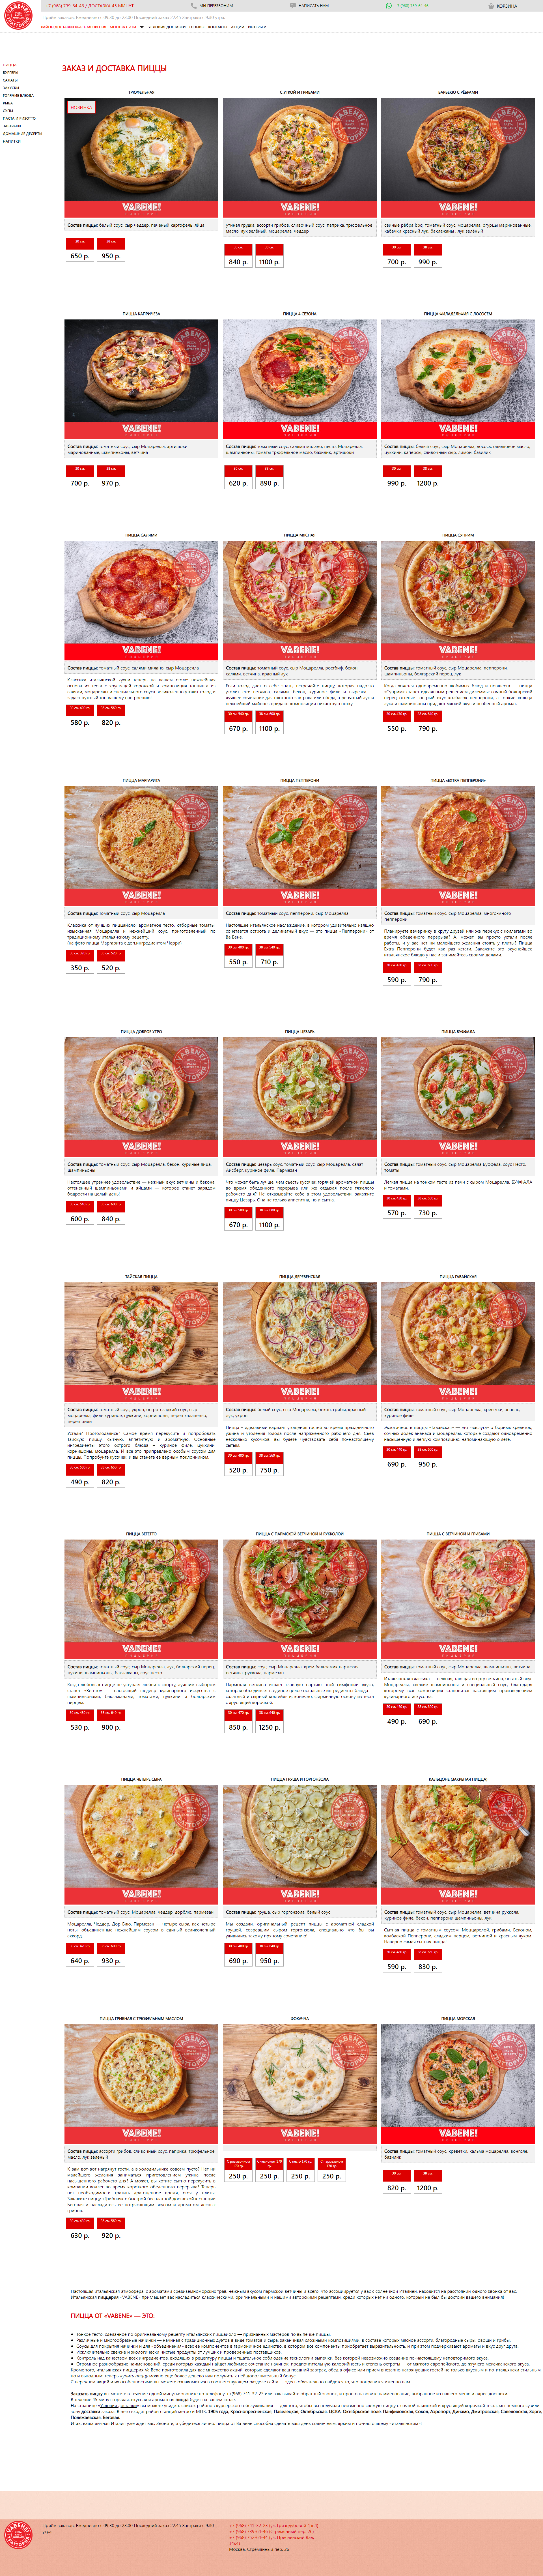 Пример vabenepizza.ru сайта из рекламной выдачи